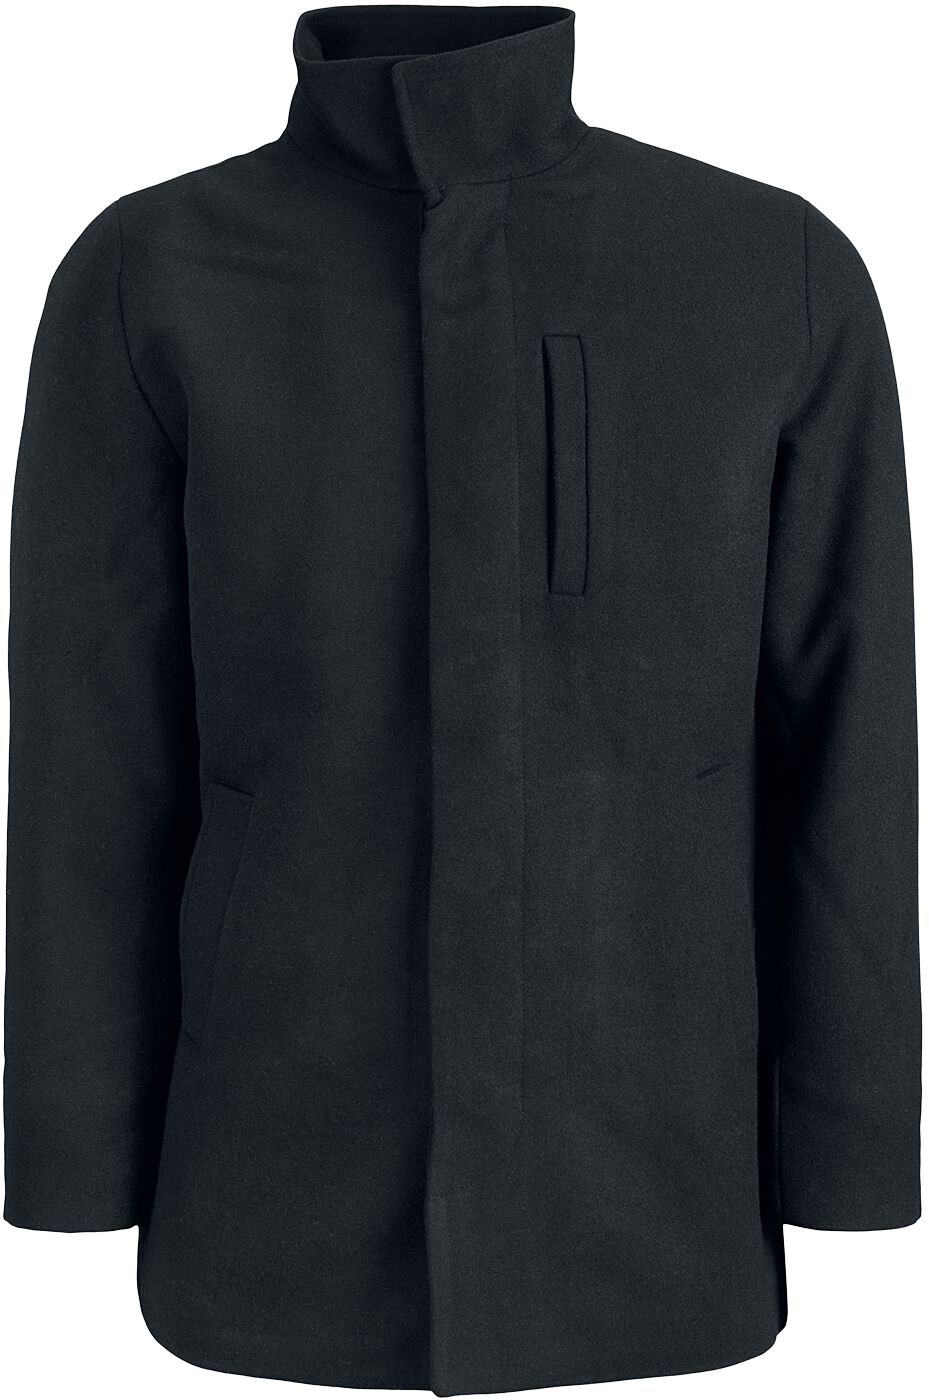 Jack & Jones Winterjacke - Dunham Wool Jacket - S bis XL - für Männer - Größe XL - schwarz